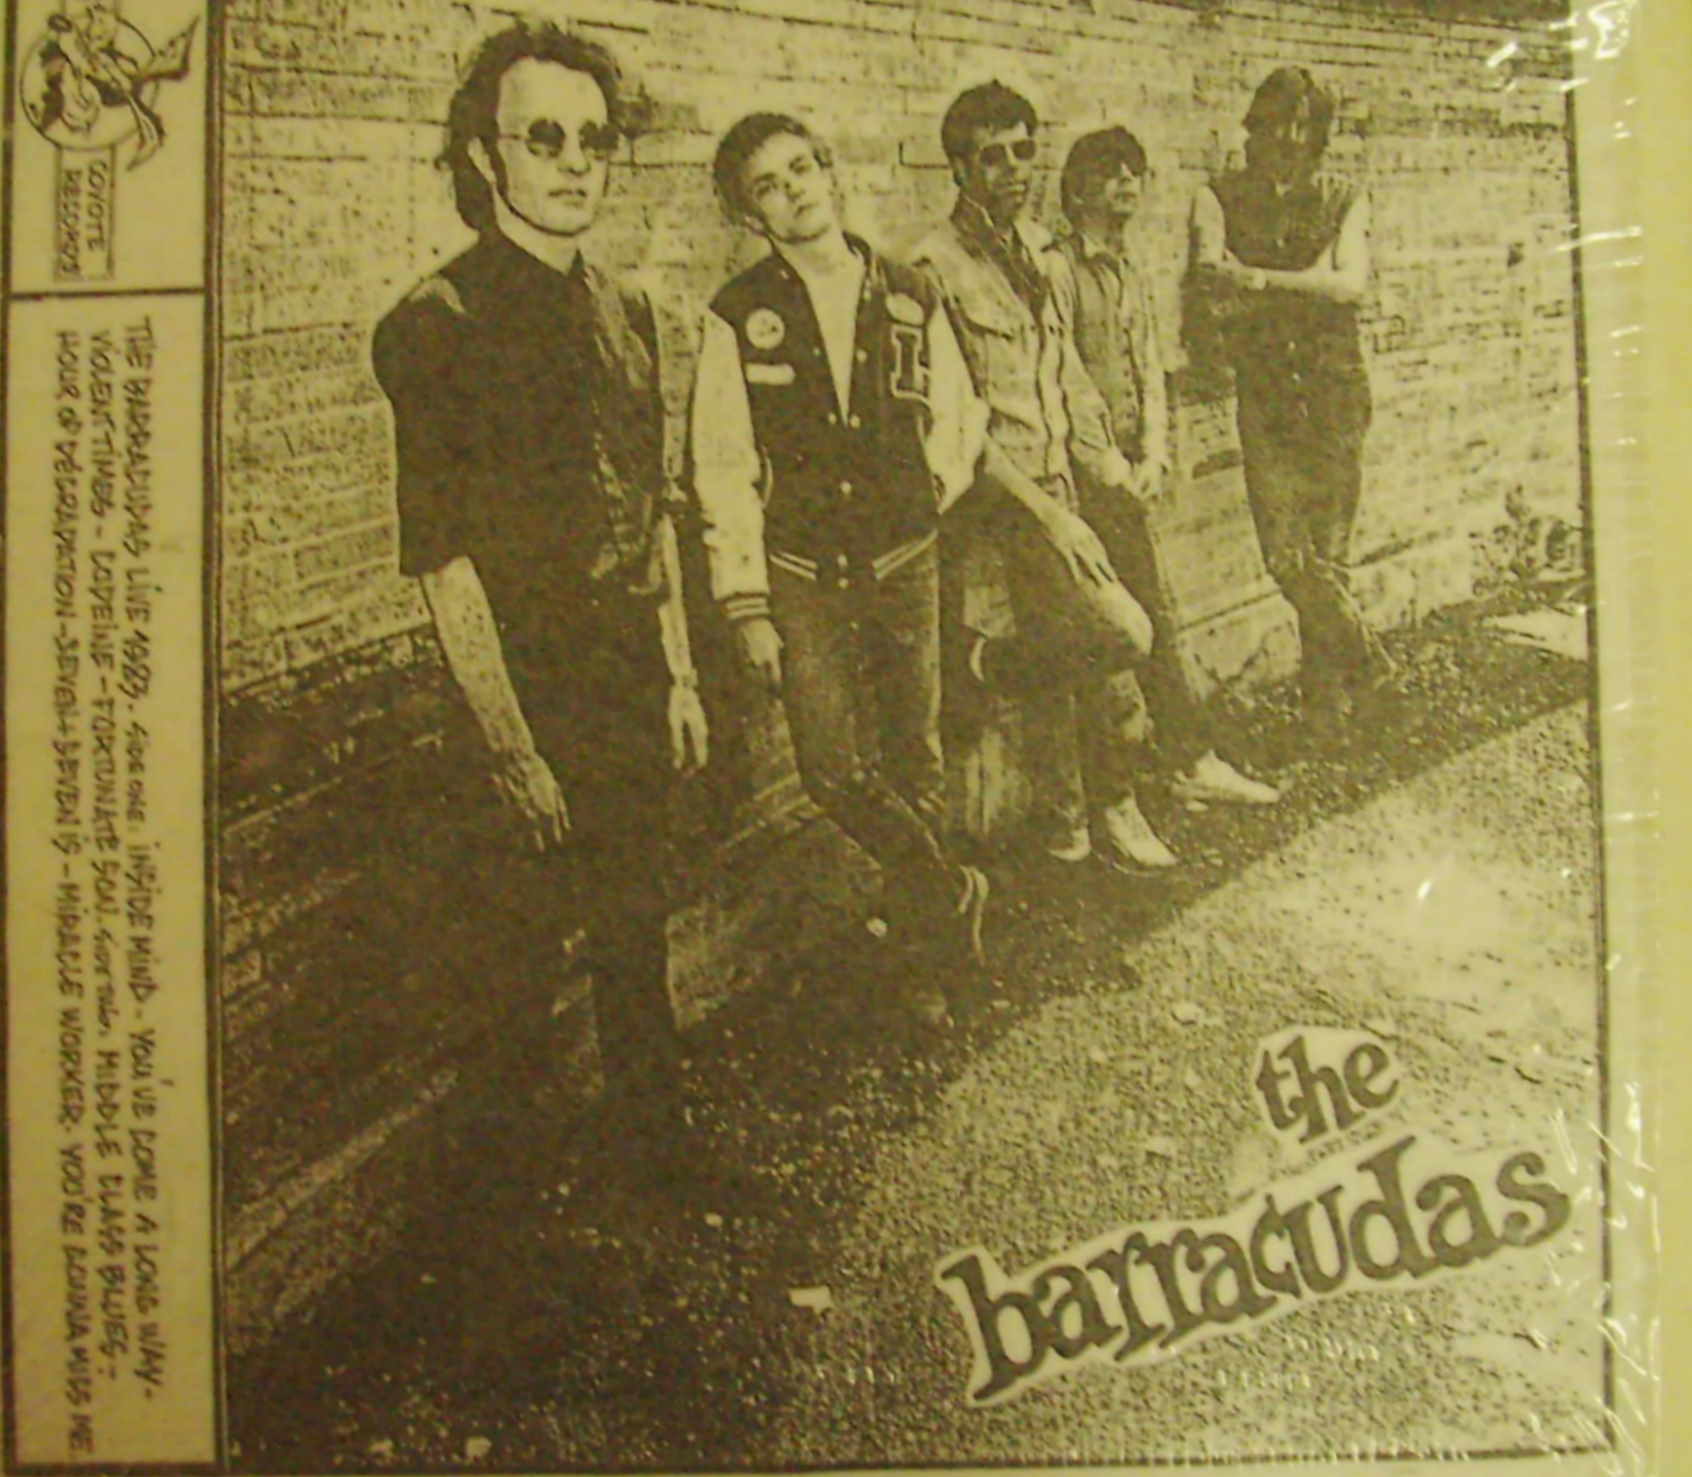 Barracudas / Live 1983